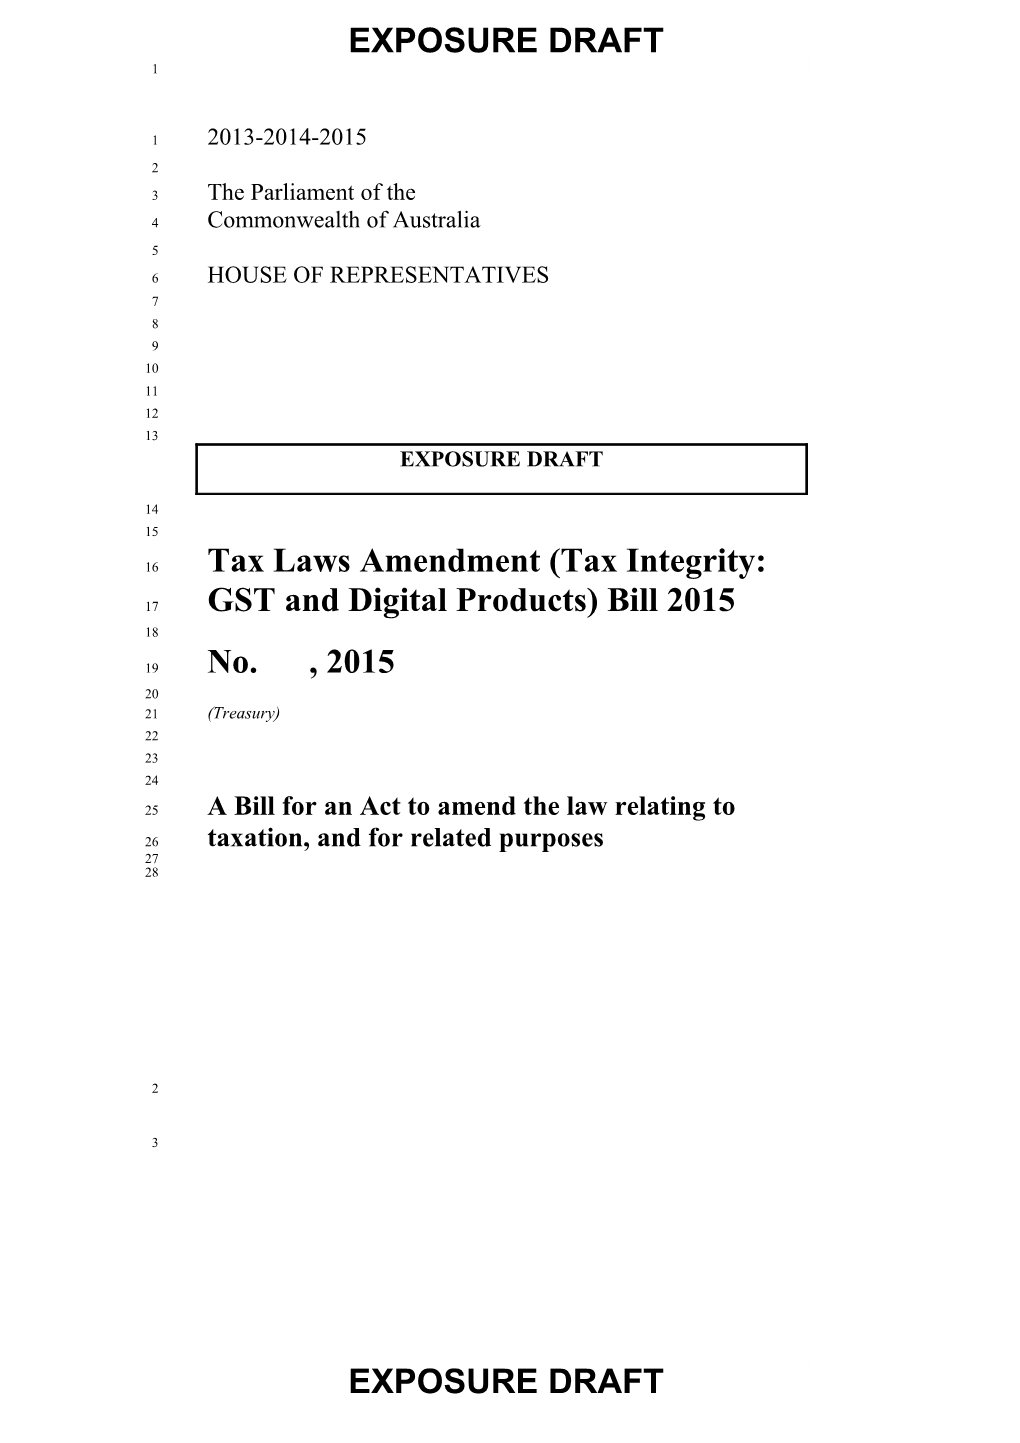 Exposure Draft - Tax Laws Amendment (Tax Integrity: GST and Digital Products) Bill 2015